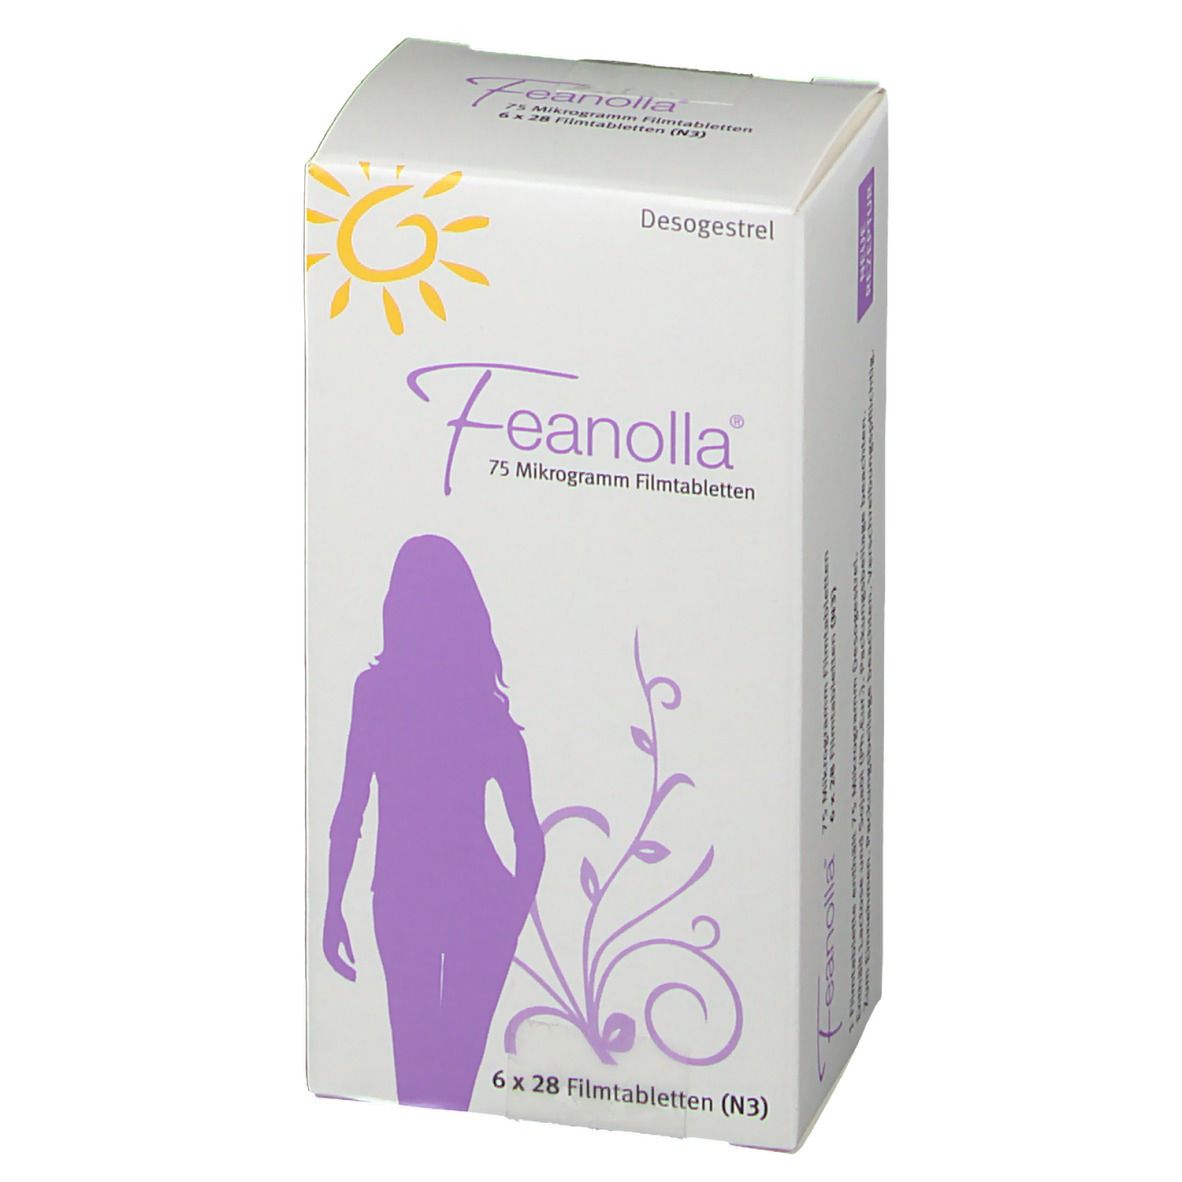 Feanolla® 75 Mikrogramm